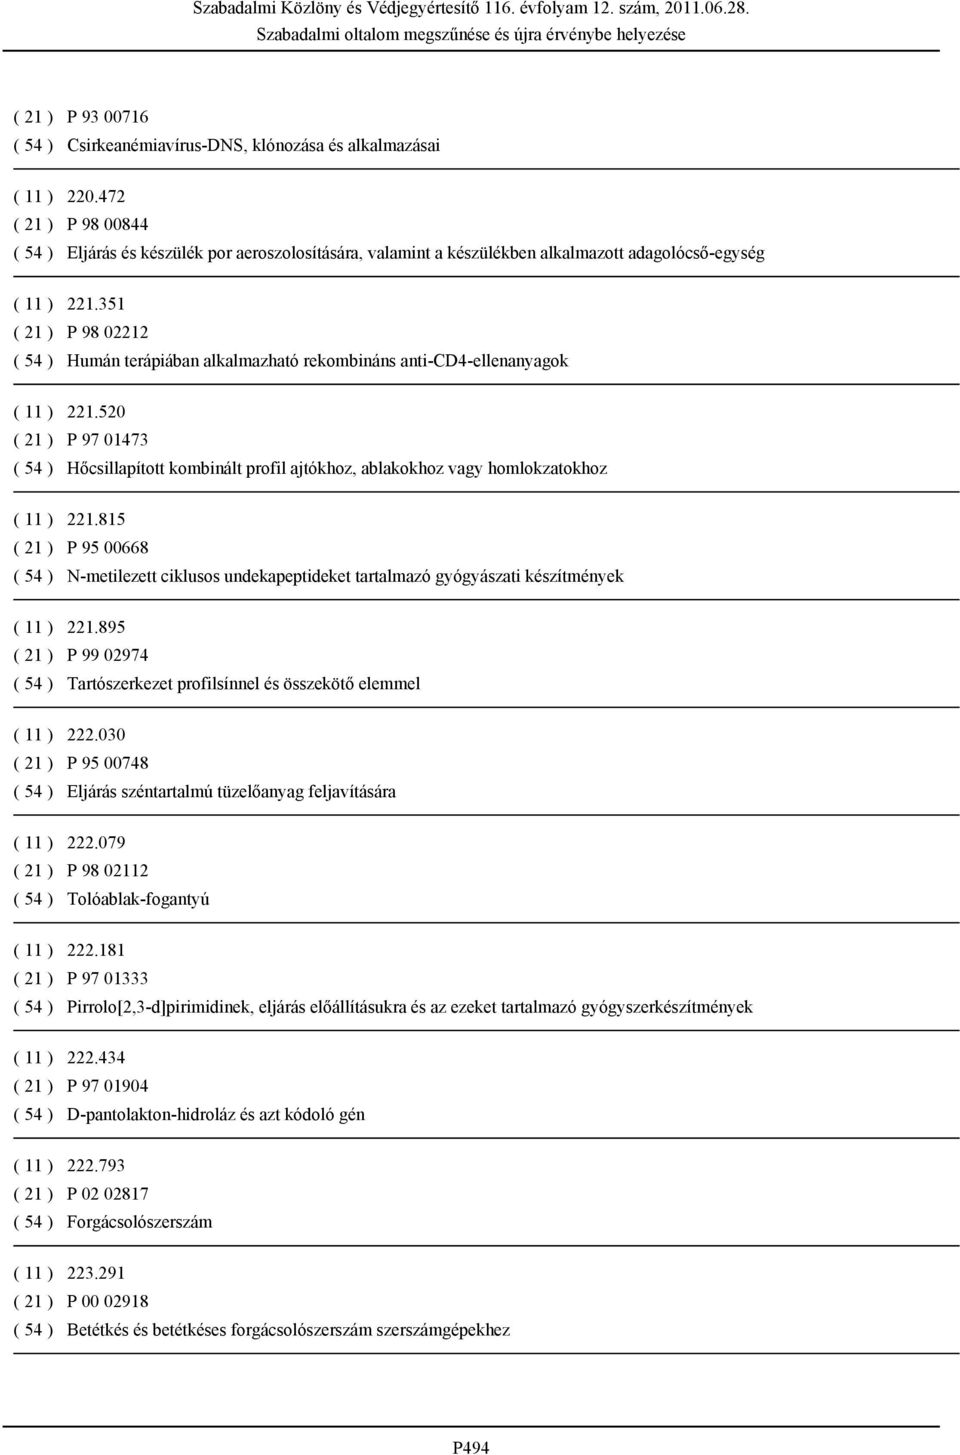 351 ( 21 ) P 98 02212 ( 54 ) Humán terápiában alkalmazható rekombináns anti-cd4-ellenanyagok ( 11 ) 221.